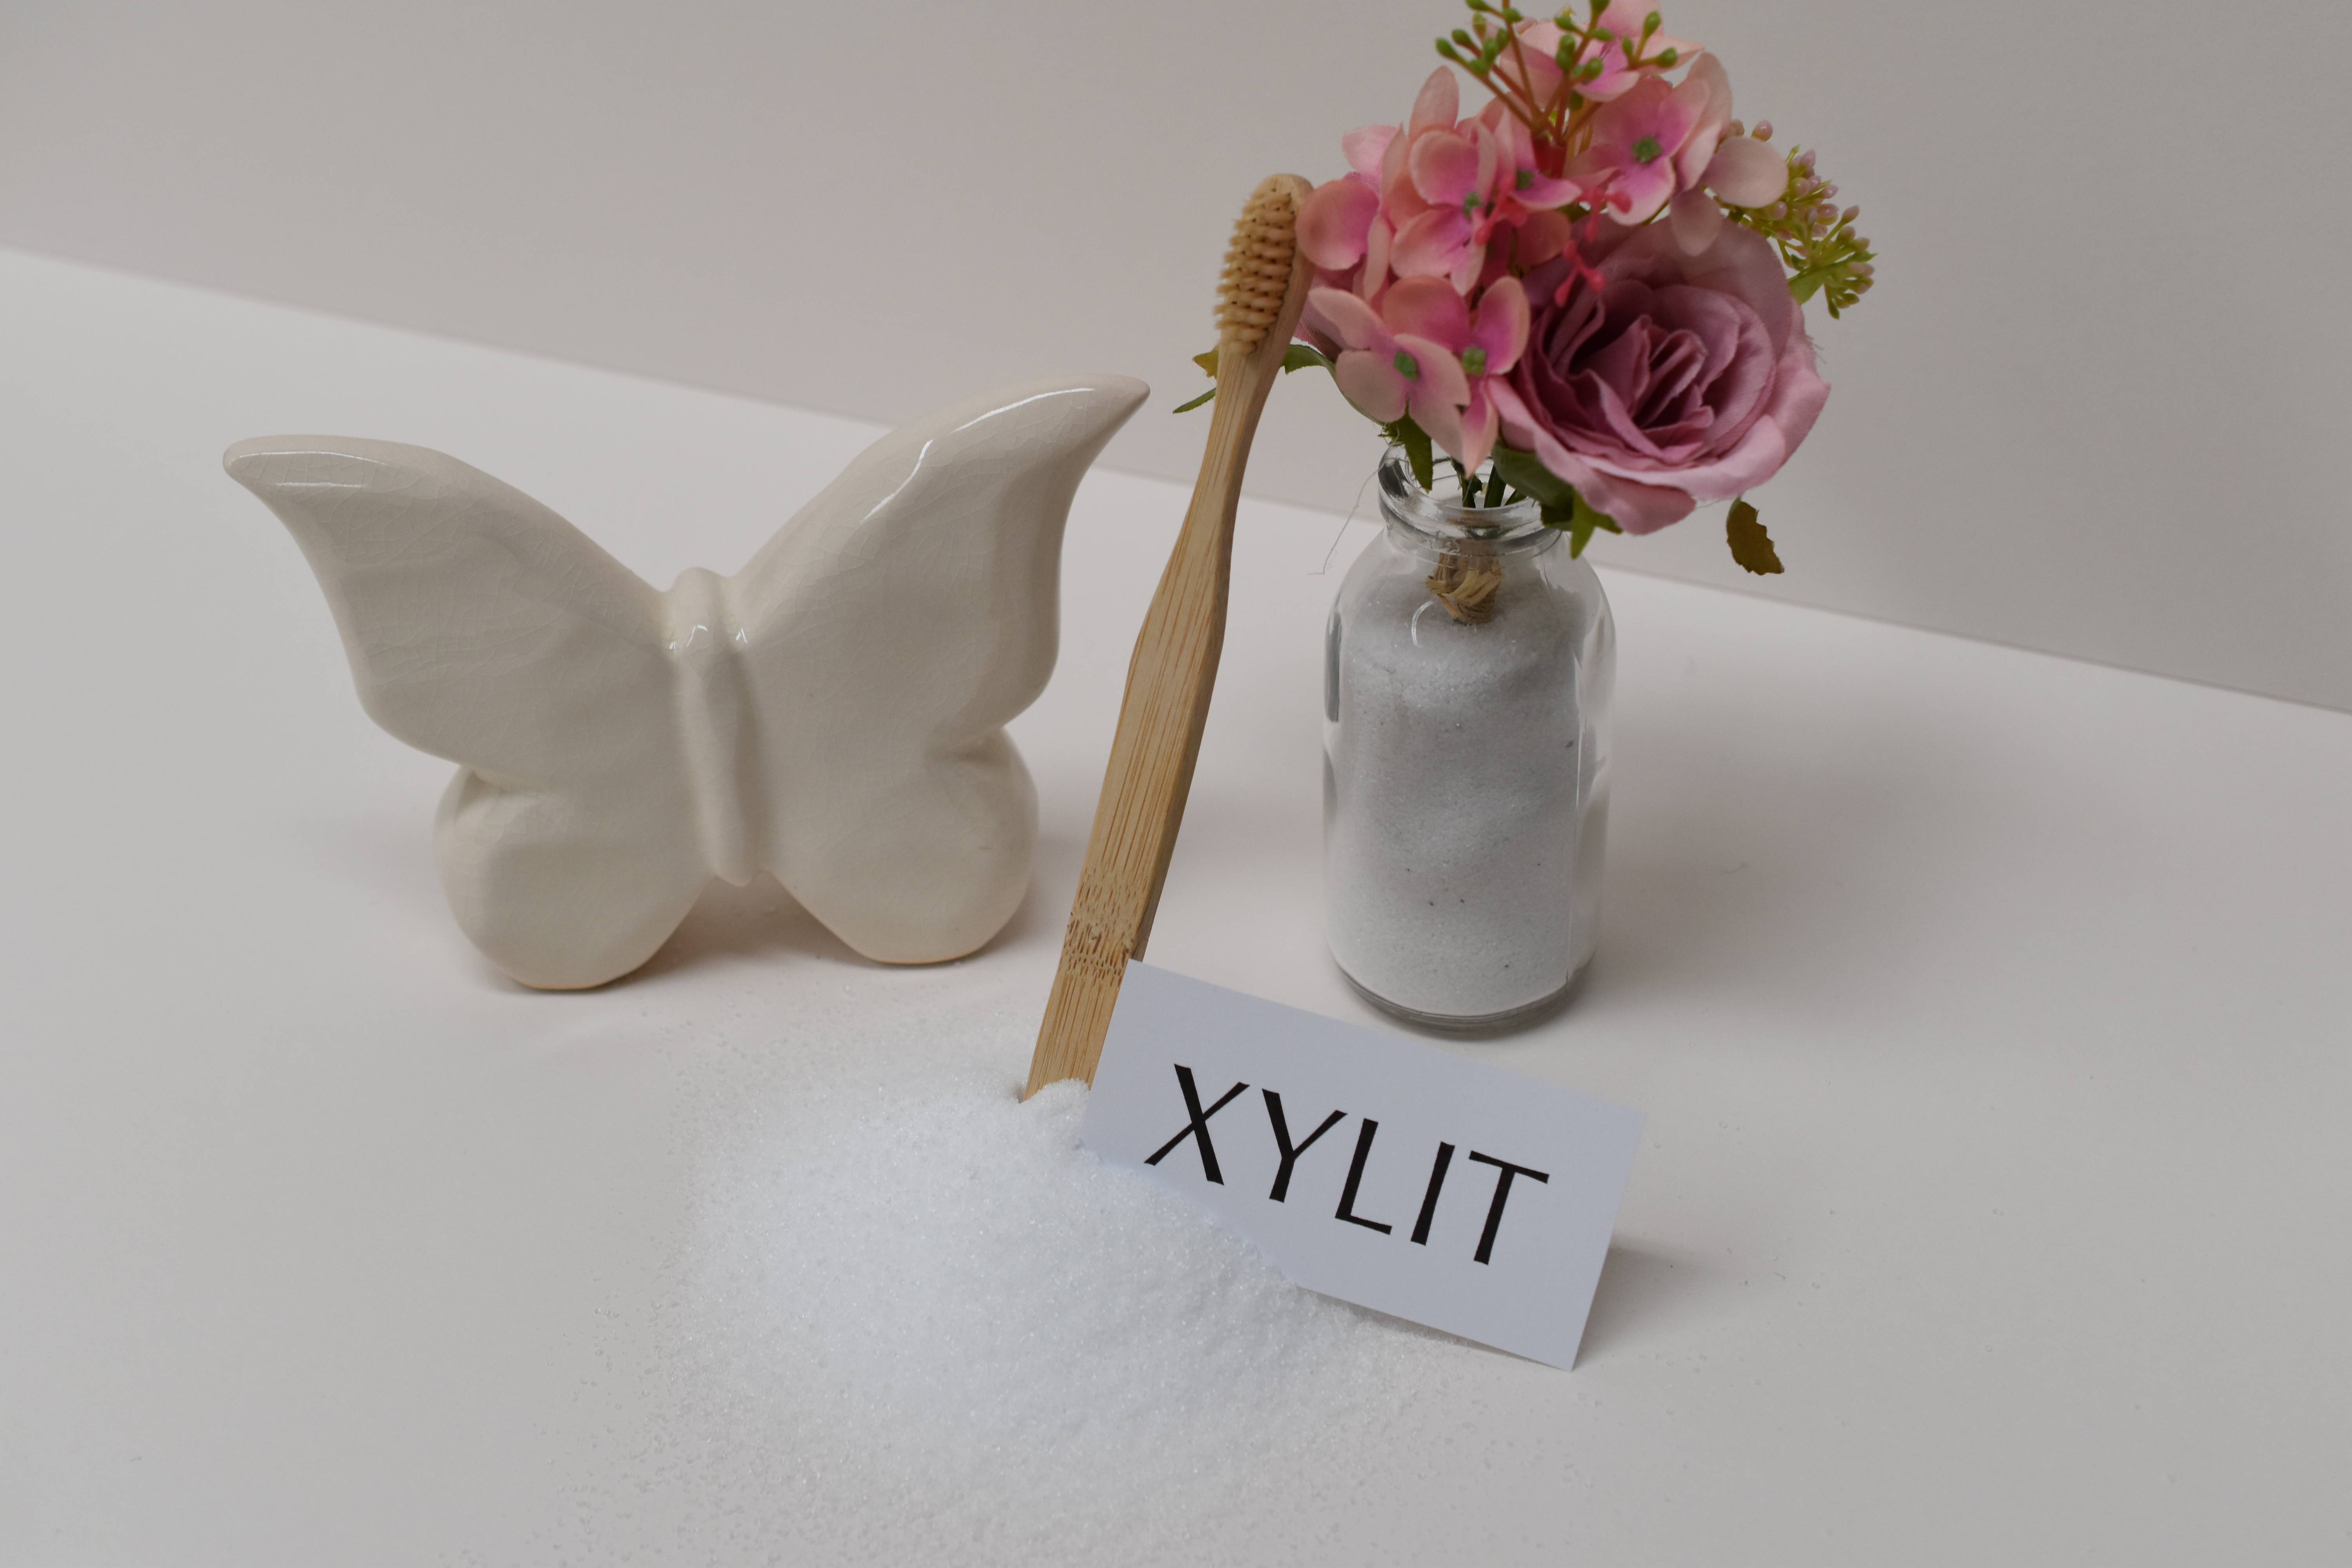 Xylit mit Zahnbürste, Schmetterlings-Deko und Blumen